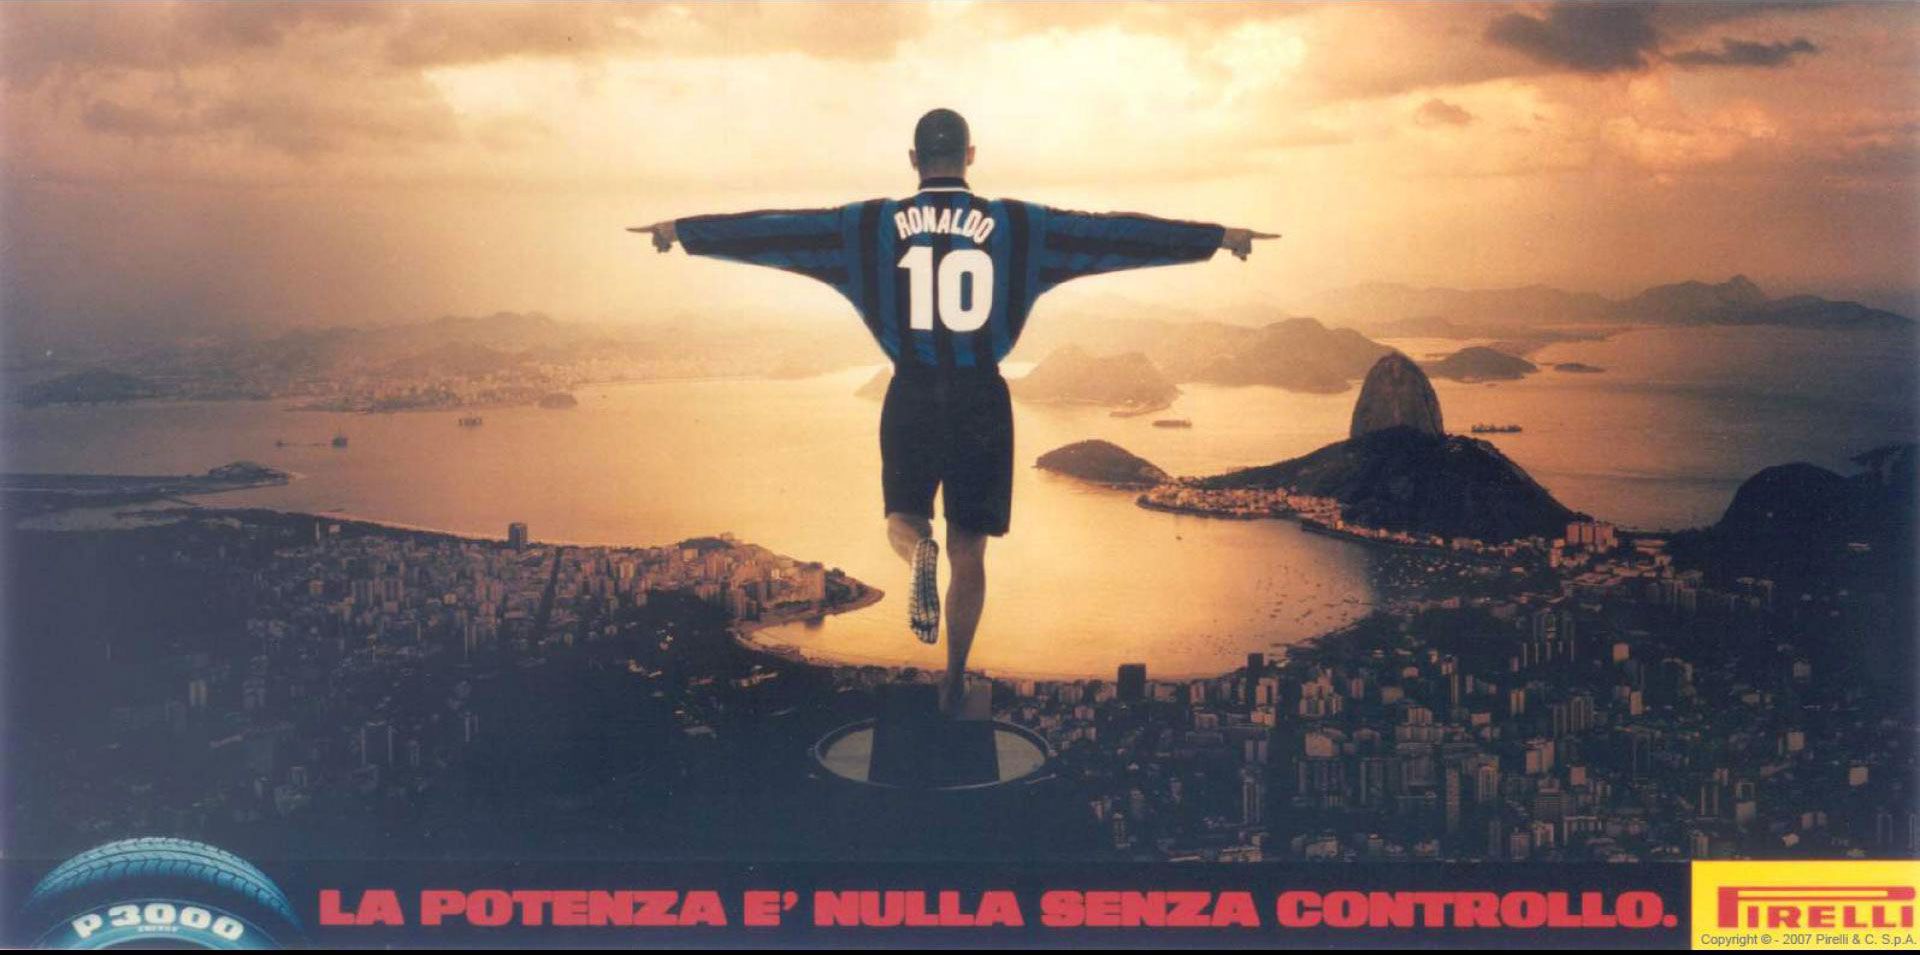 Ronaldo per la famosa pubblicità di Pirelli "La potenza è nulla senza controllo"